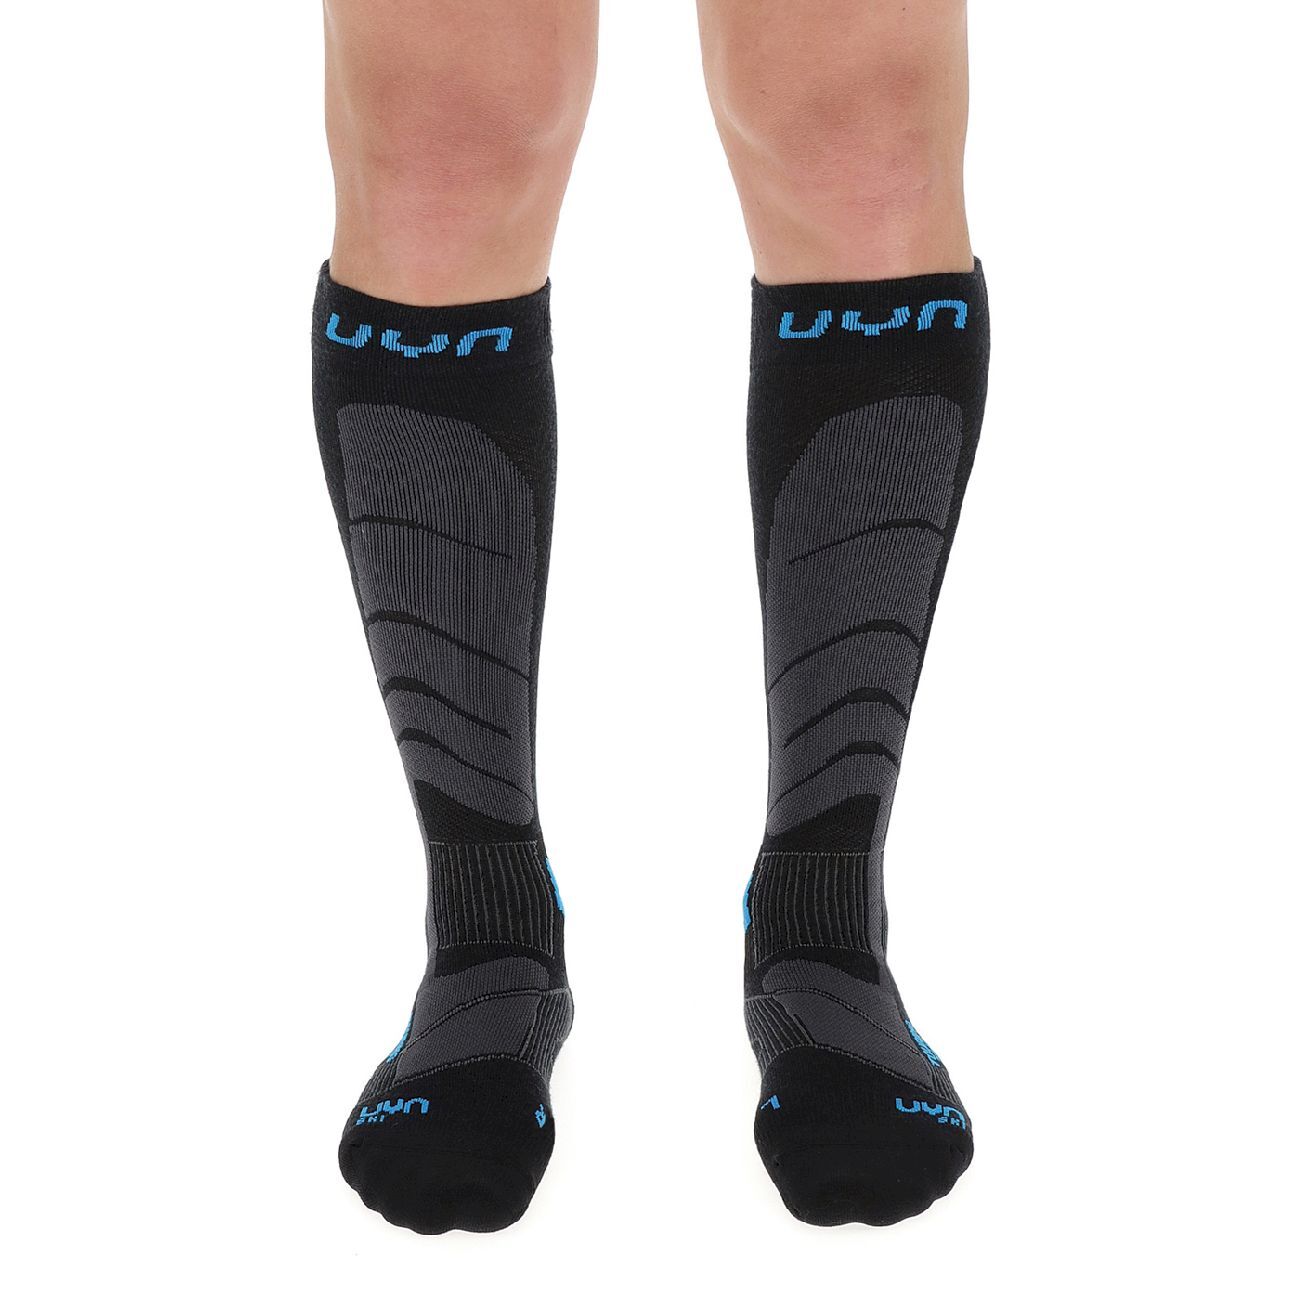 Uyn Ski Touring Socks - Ski socks - Men's